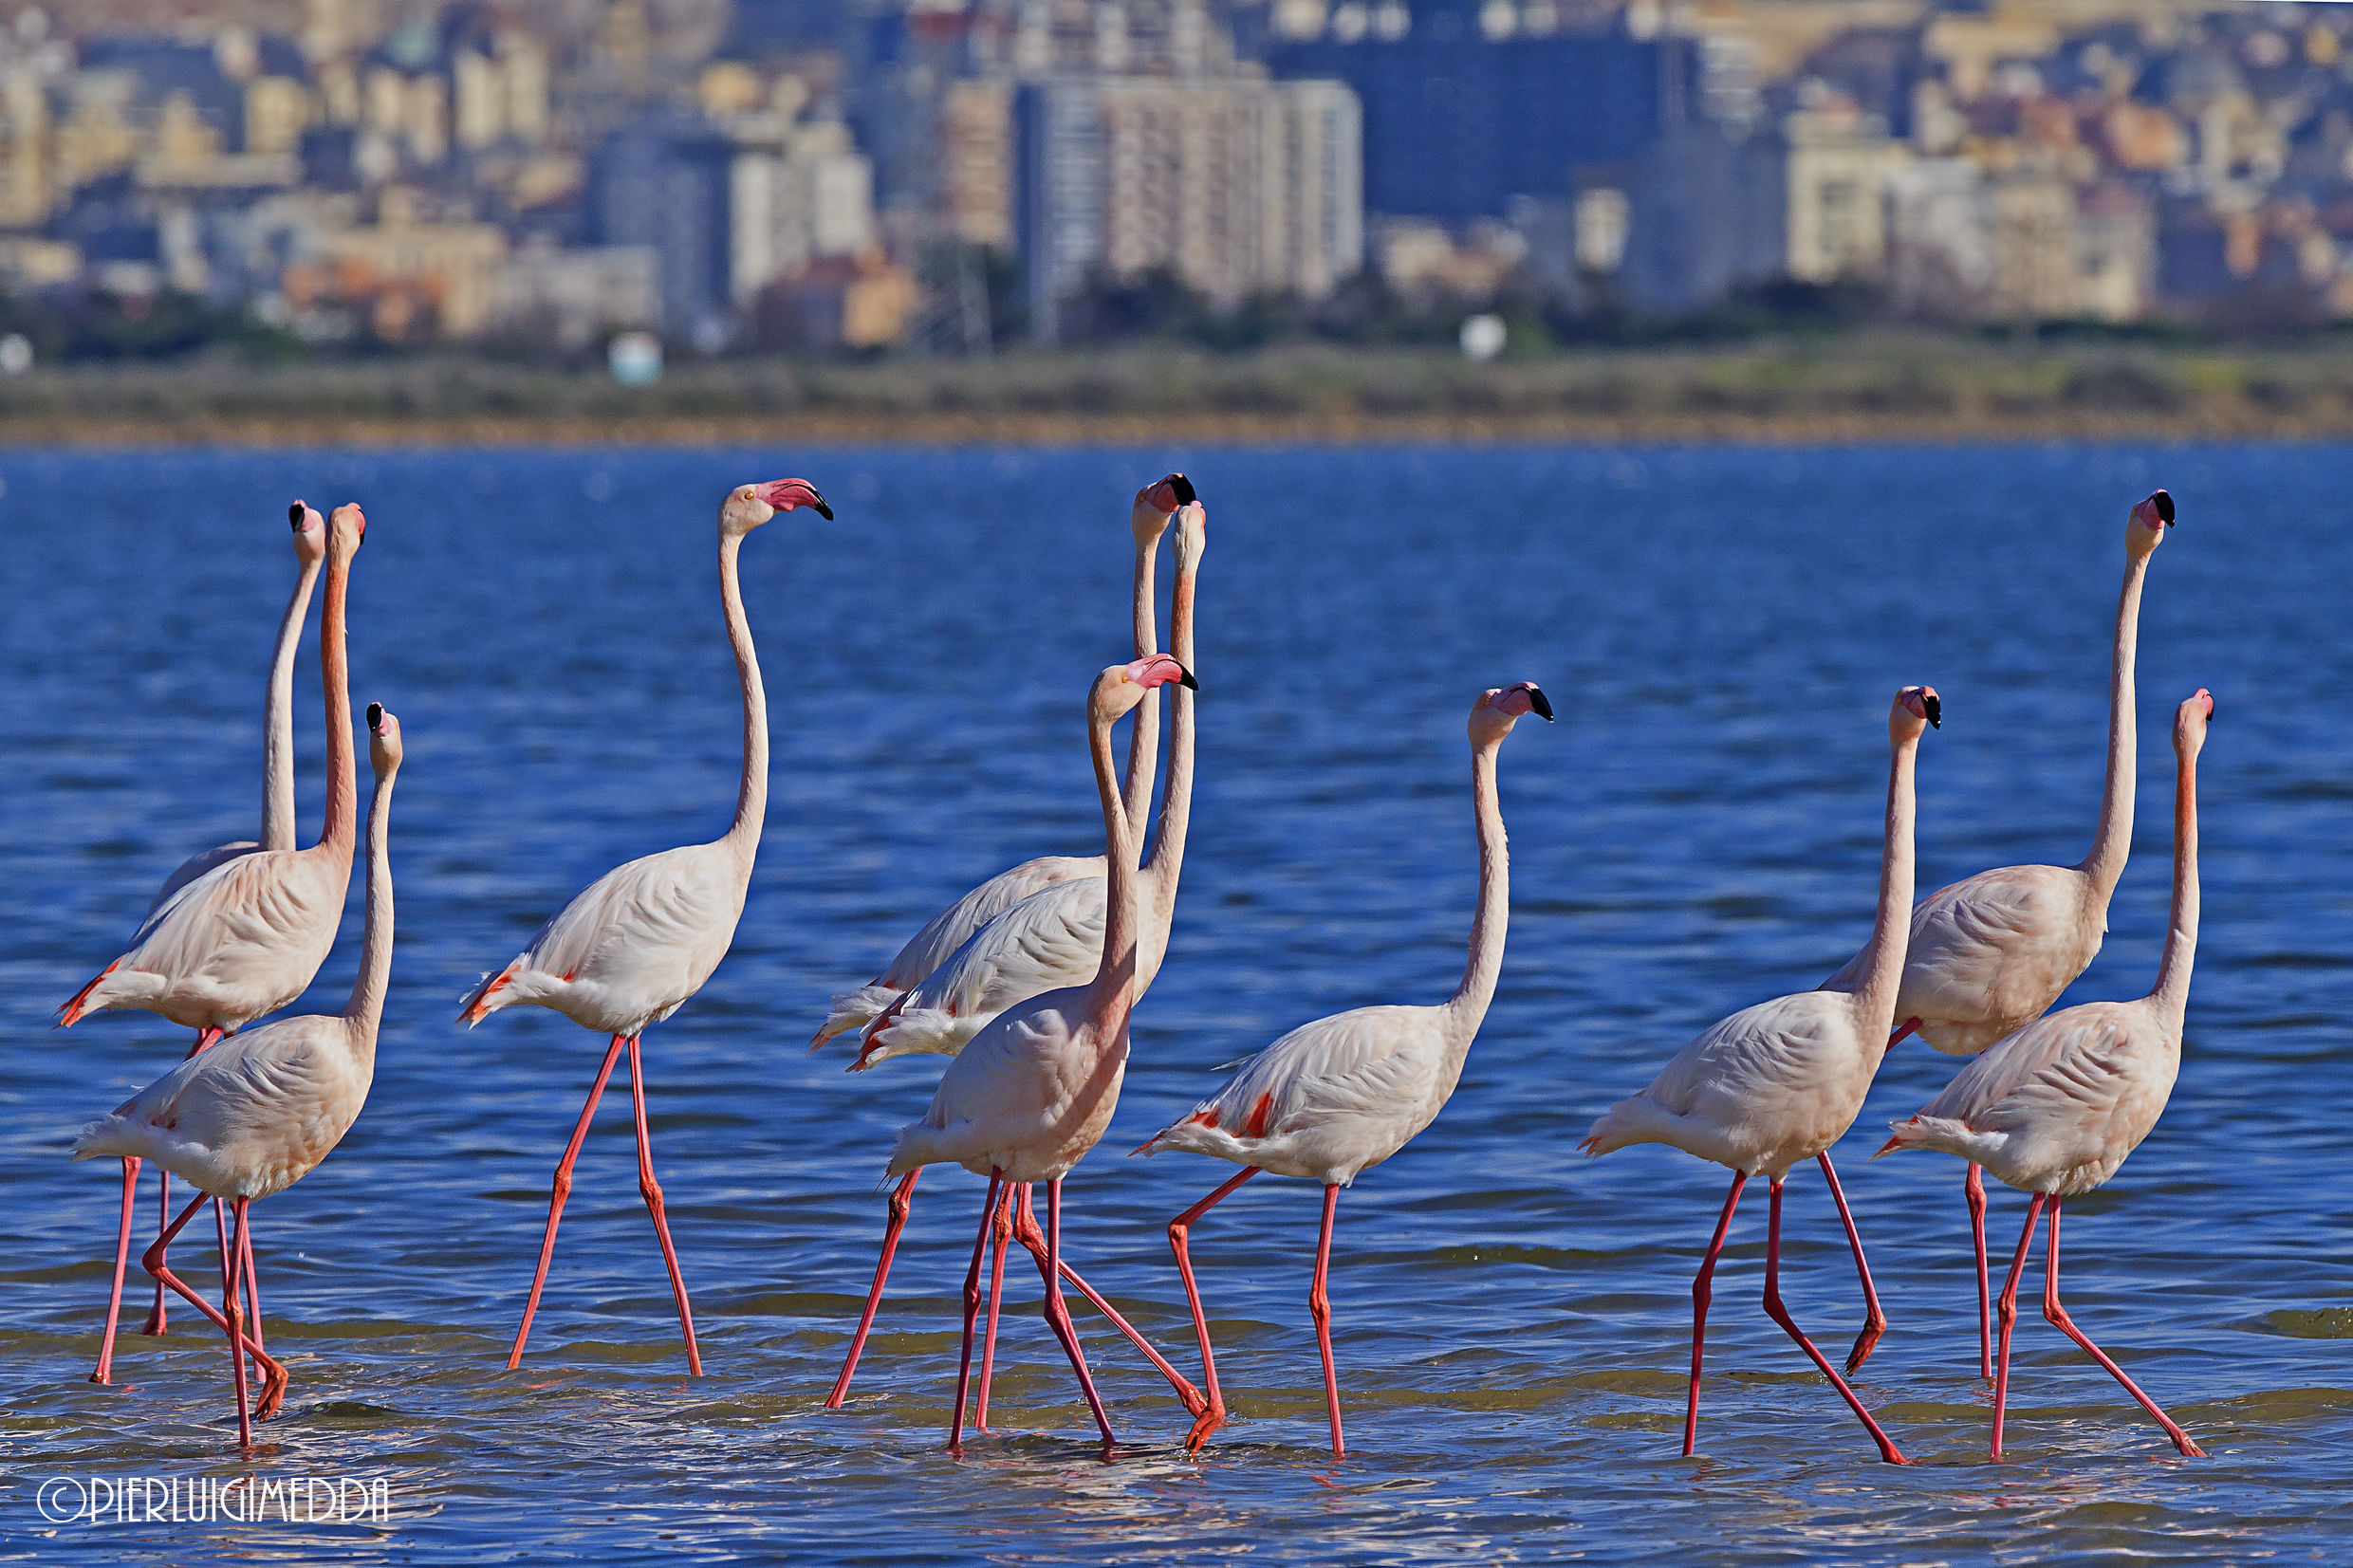 Bridal parade of pink flamingos...